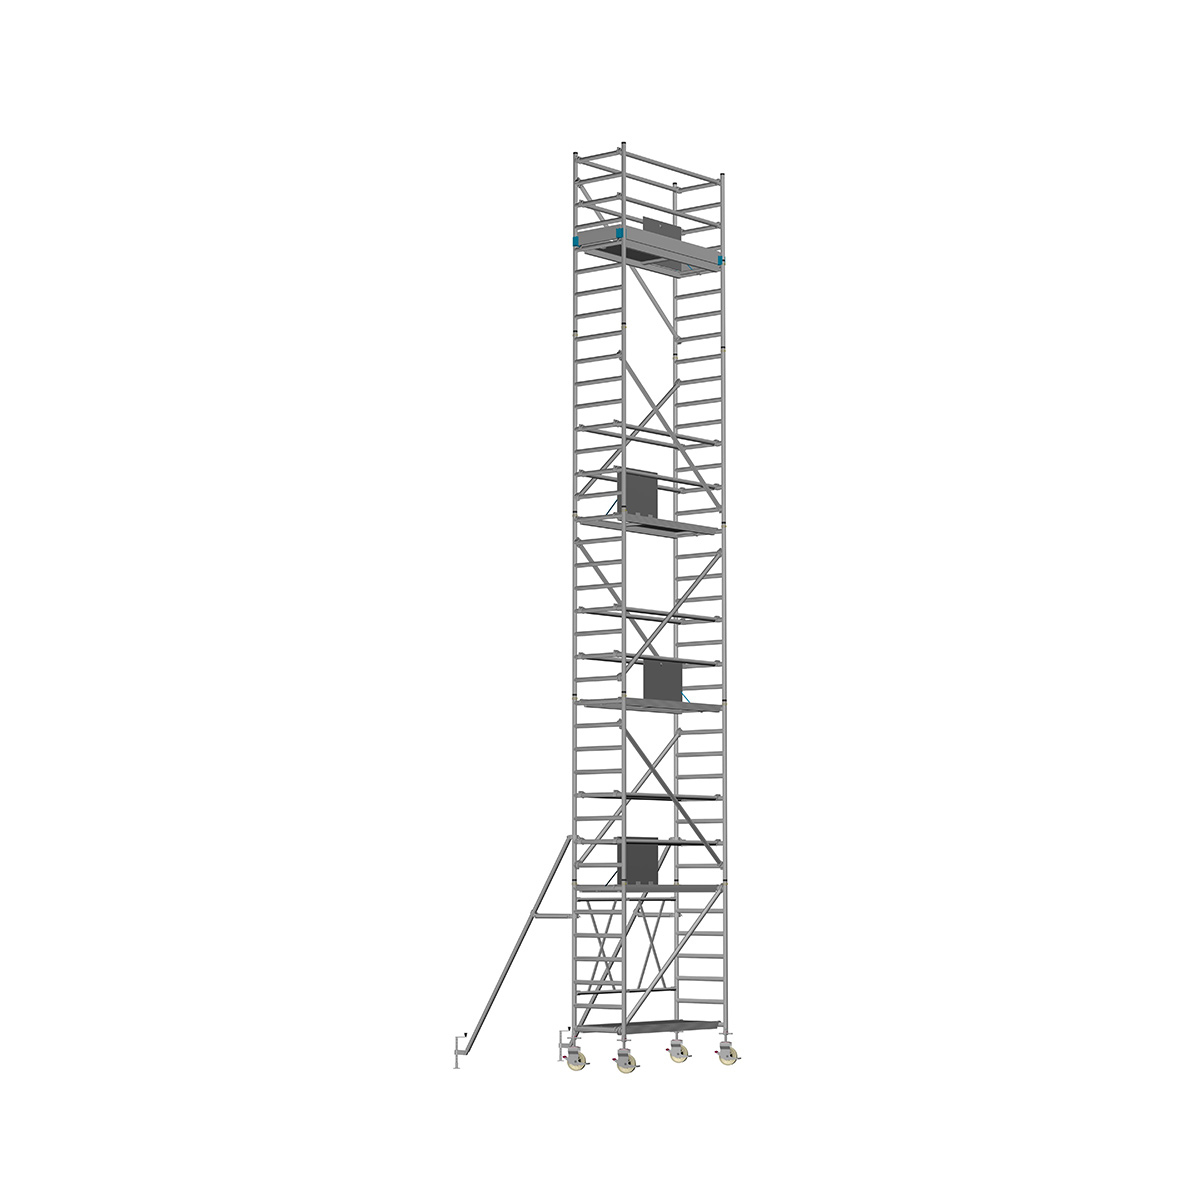 Chiemsee 2 PROFI- Länge: 2,54 m - Breite: 0,74 m, Standhöhe 4,00 m